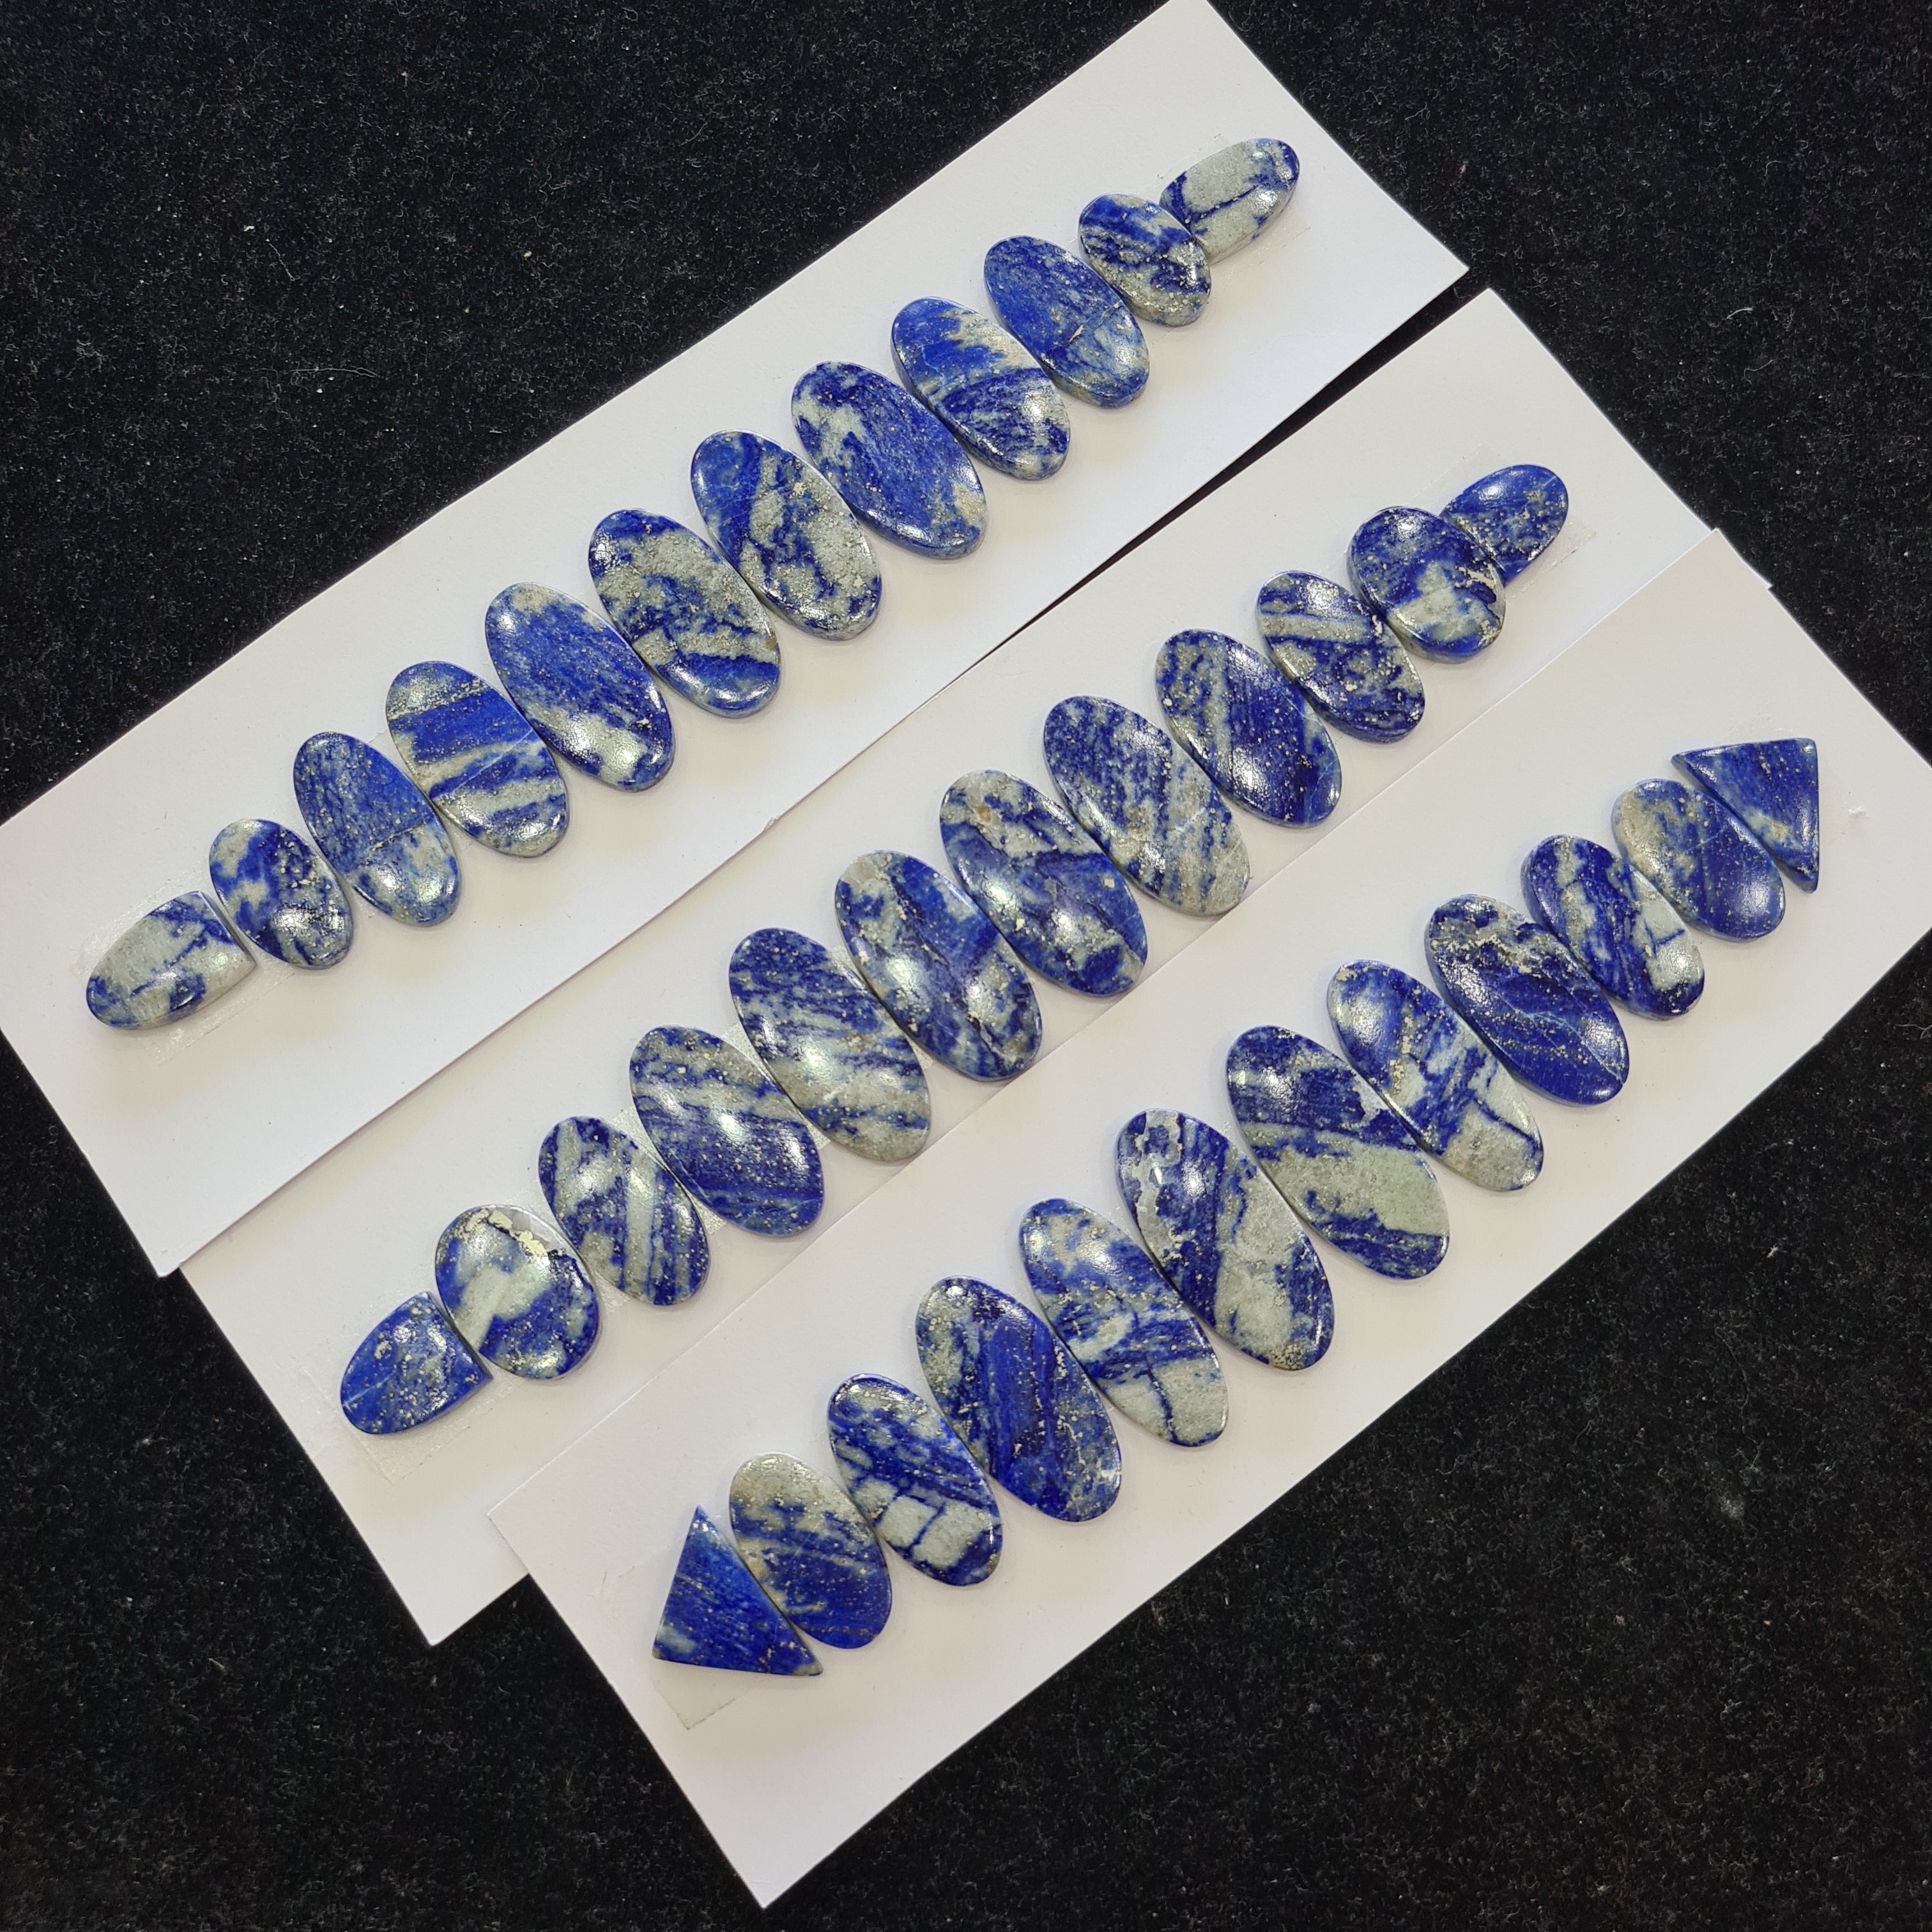 1 Set Natural Lapis Lazuli Bracelet Cab in 8 Inches Size: 21-34mm - The LabradoriteKing